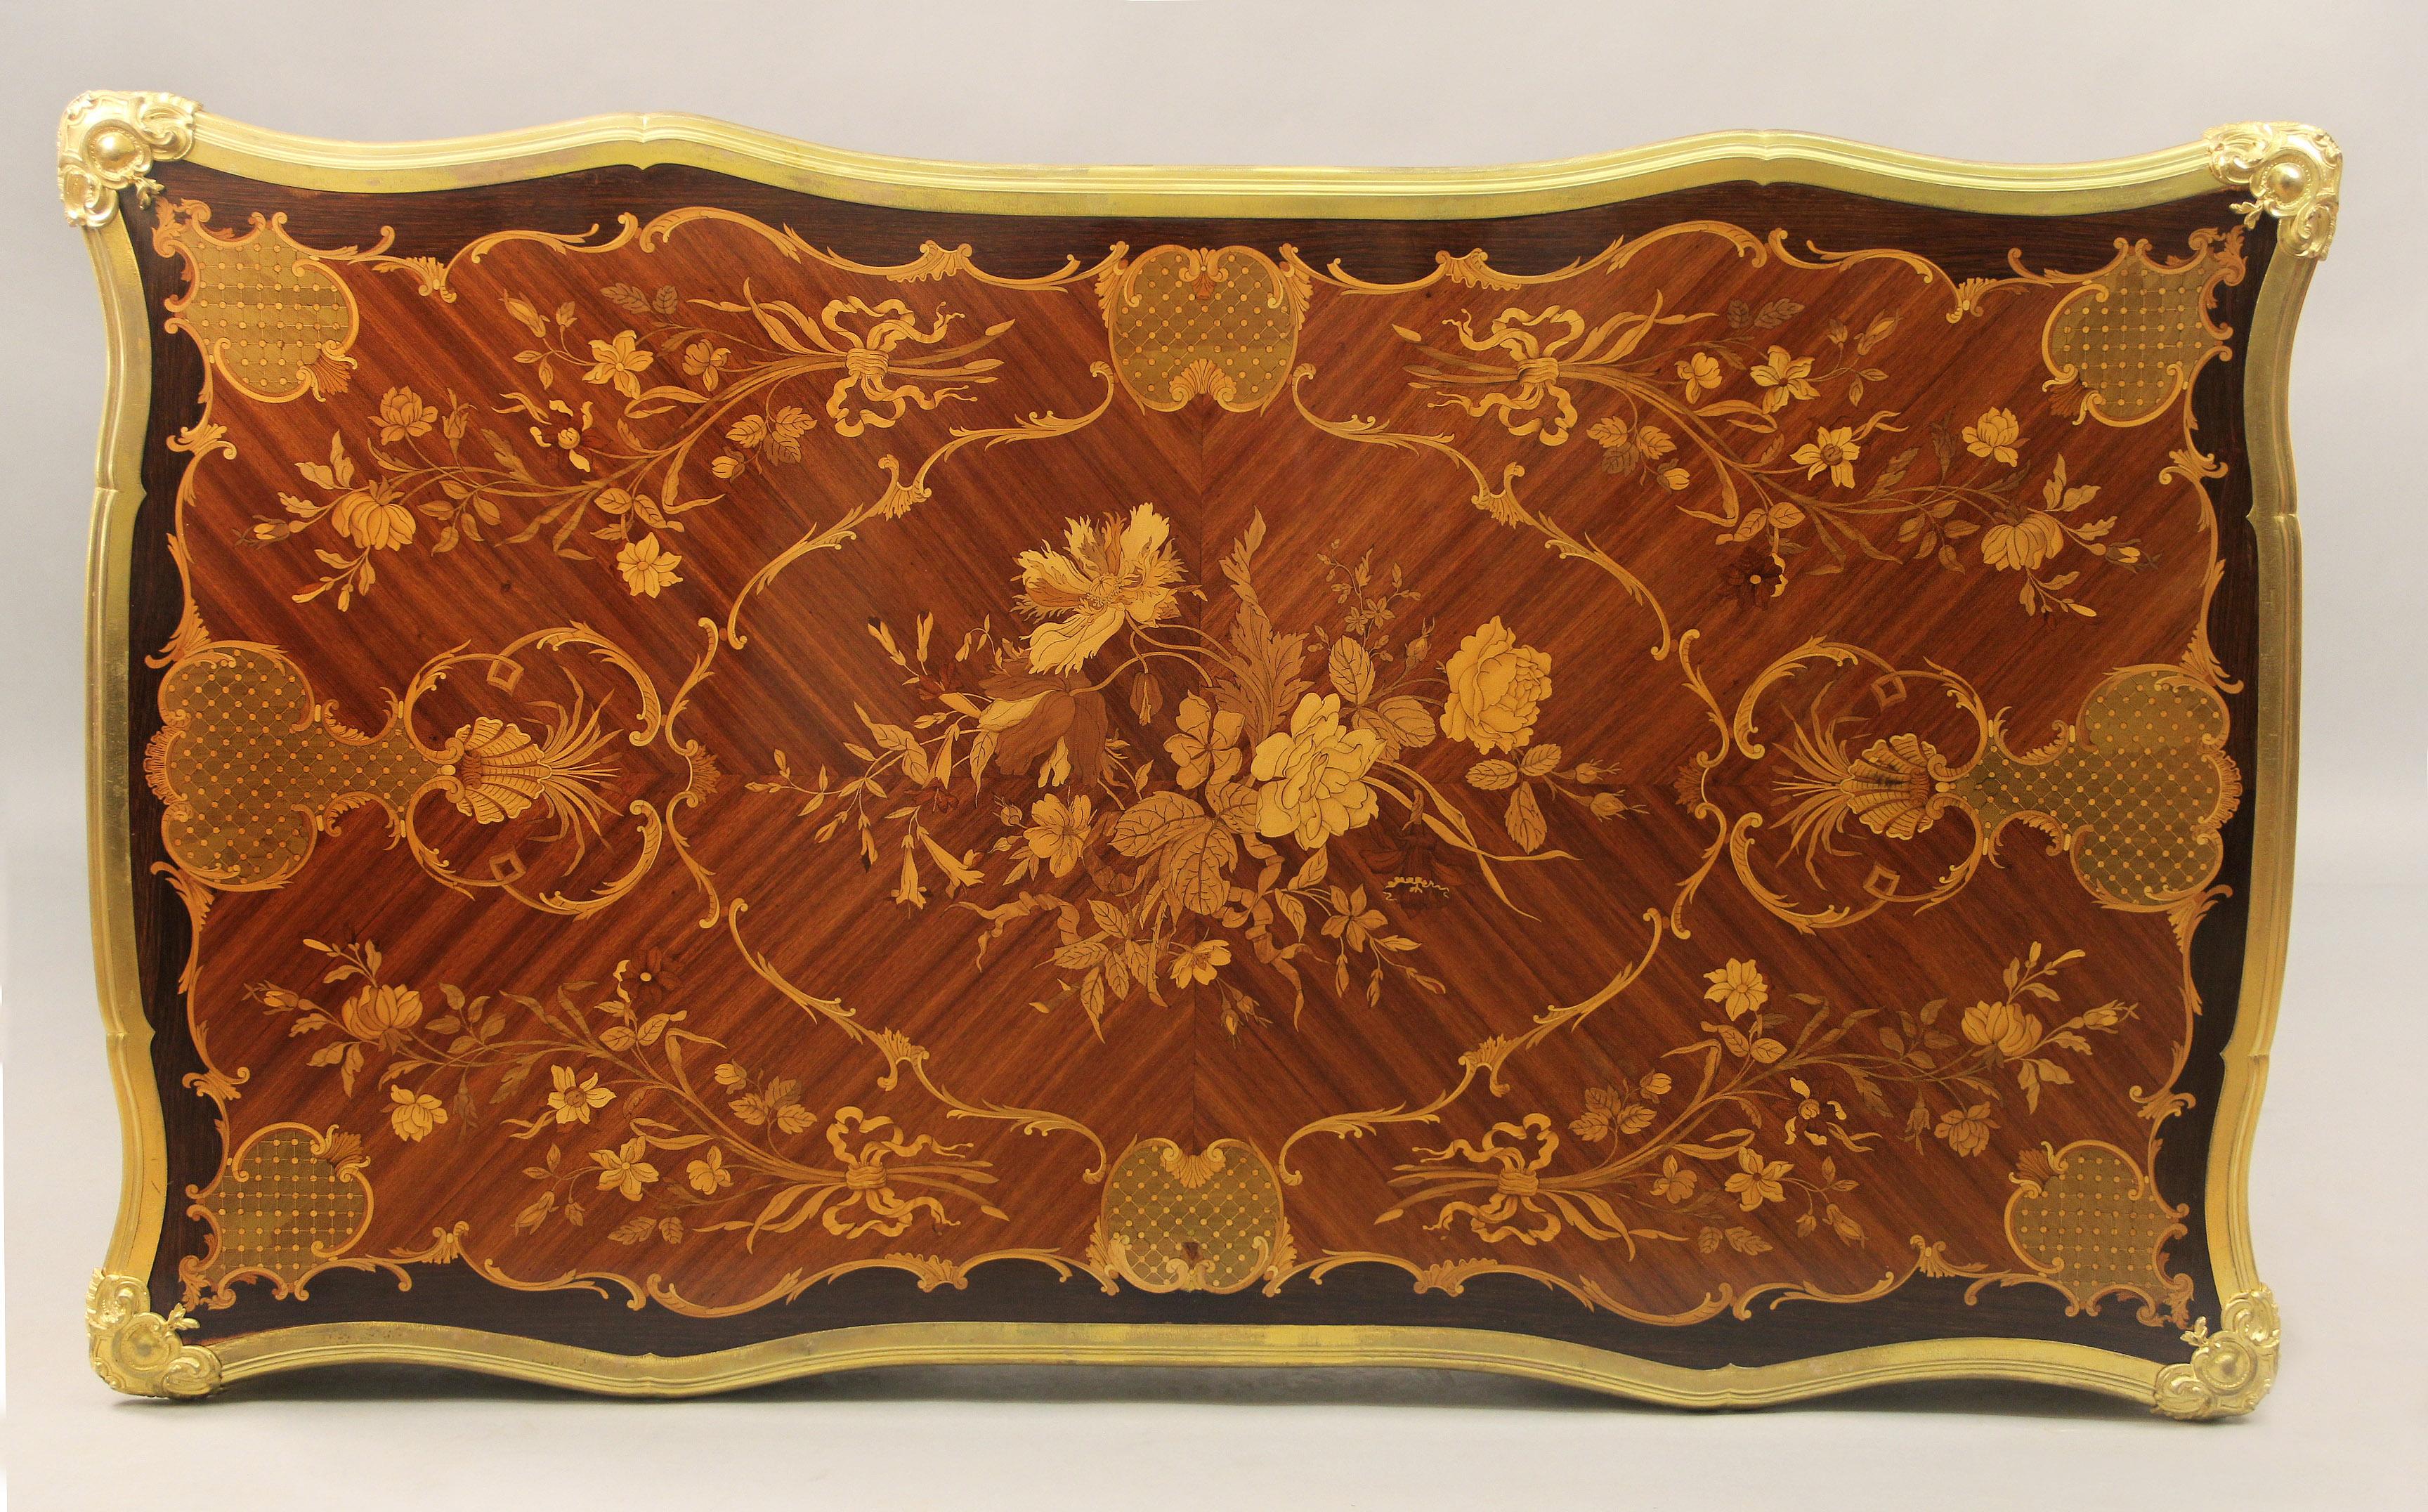 Fantastique table de marqueterie de style Louis XV de la fin du 19e siècle, montée sur bronze doré.

Par Paul Sormani

Un magnifique plateau en marqueterie florale avec une bordure en bronze au-dessus de trois tiroirs marquetés. Cotés et dos